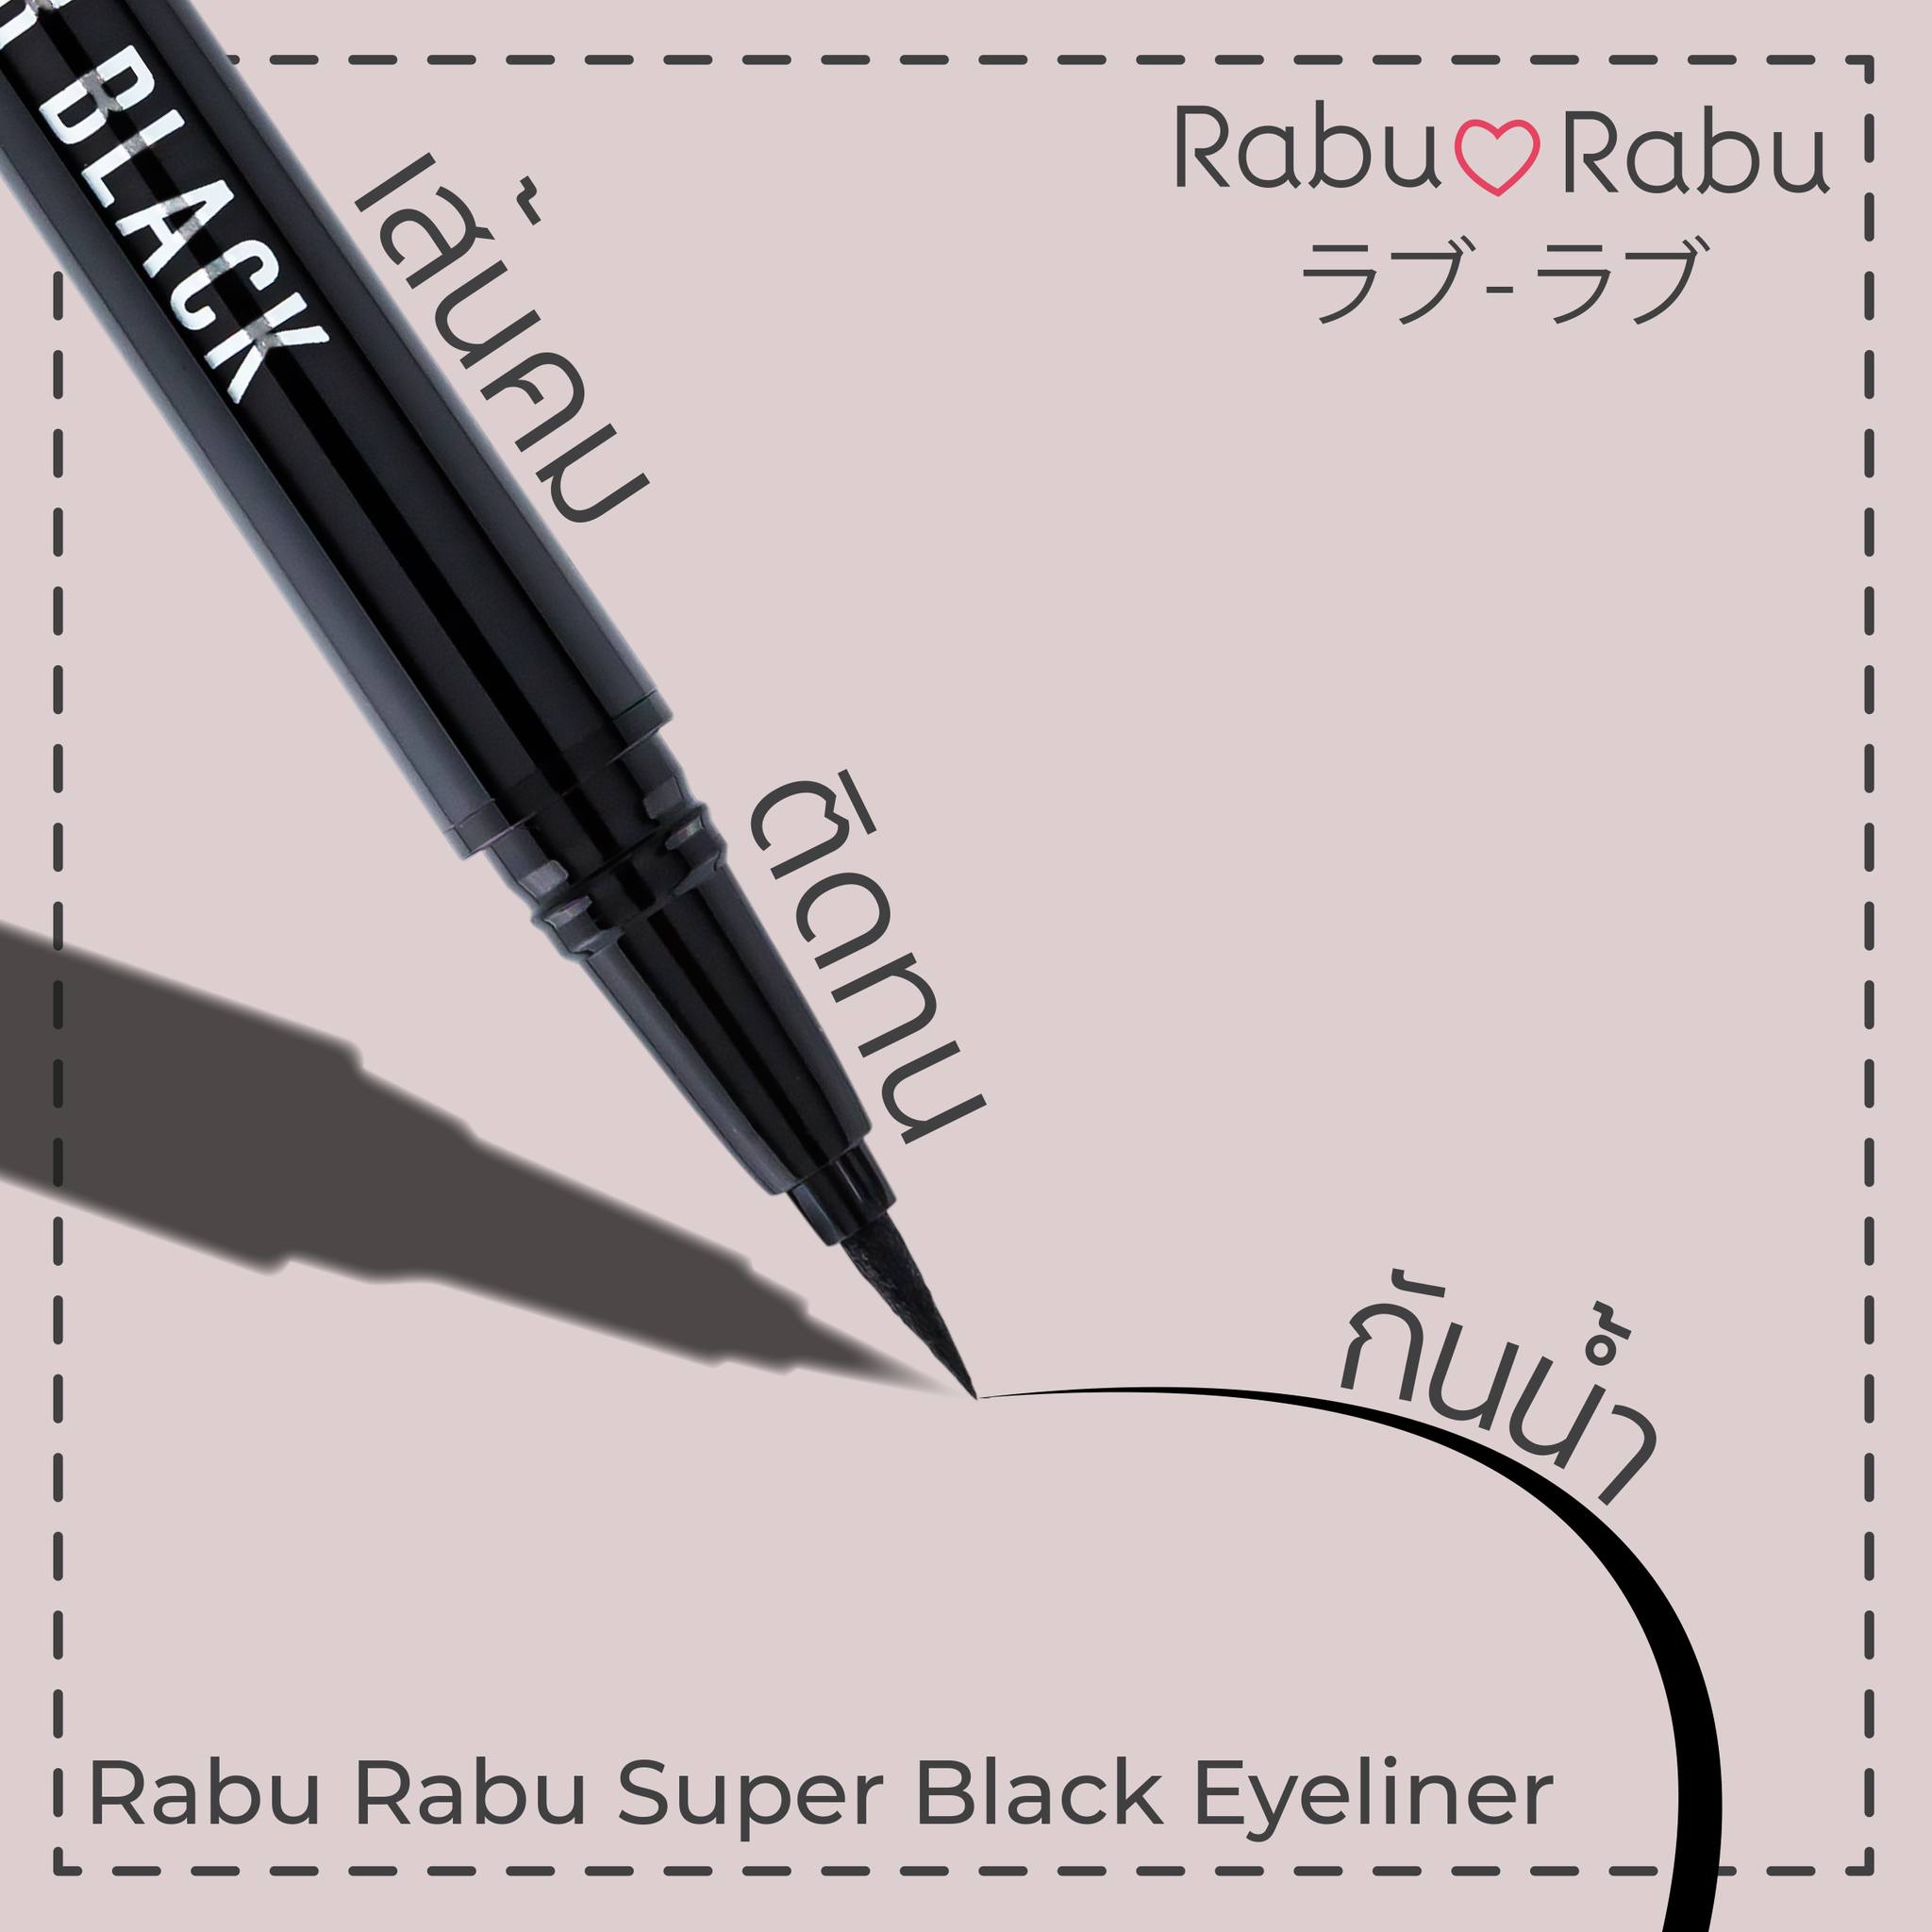 Rabu Rabu Super Black Eyeliner 0.5g 